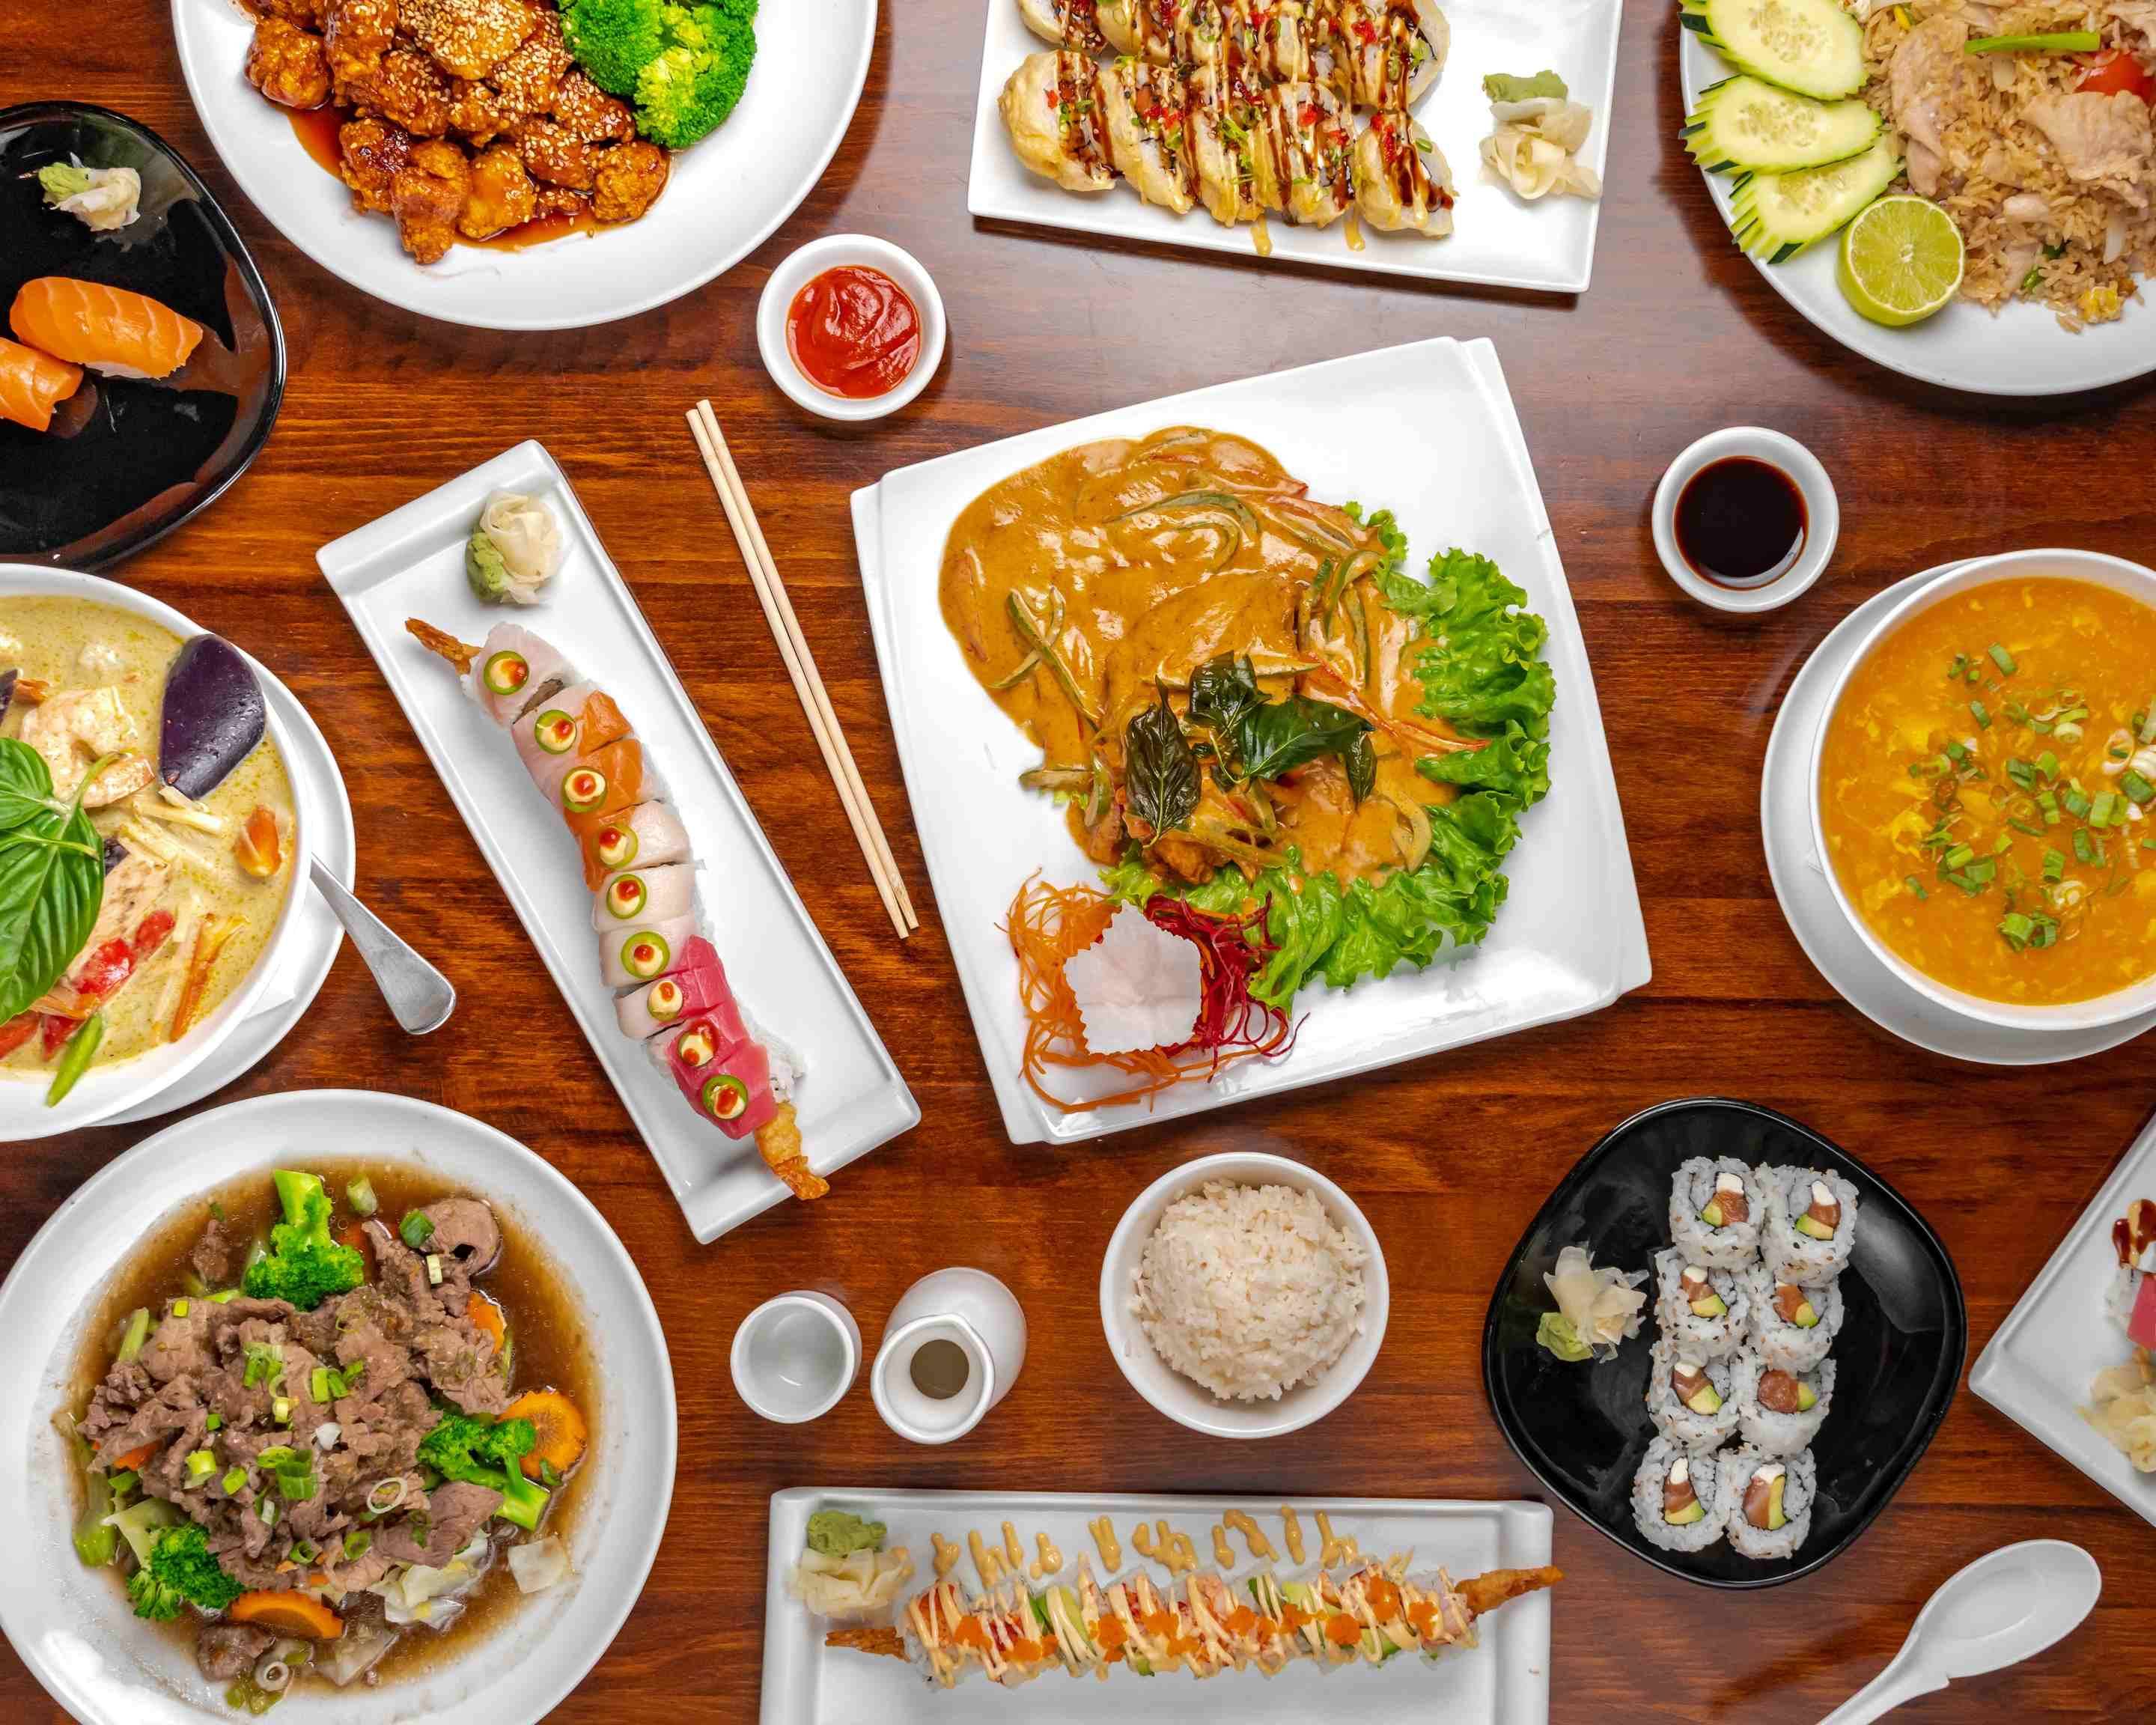 Thực đơn Thai Kitchen and Sushi Bar: Thực đơn Thai Kitchen and Sushi Bar với những món ăn đặc trưng và hương vị tuyệt vời, chắc chắn sẽ là một sự lựa chọn thích hợp cho mọi dịp ăn uống. Hãy xem hình ảnh đầy hấp dẫn về thực đơn Thai Kitchen and Sushi Bar để lựa chọn những món ăn phù hợp với sở thích của mình.